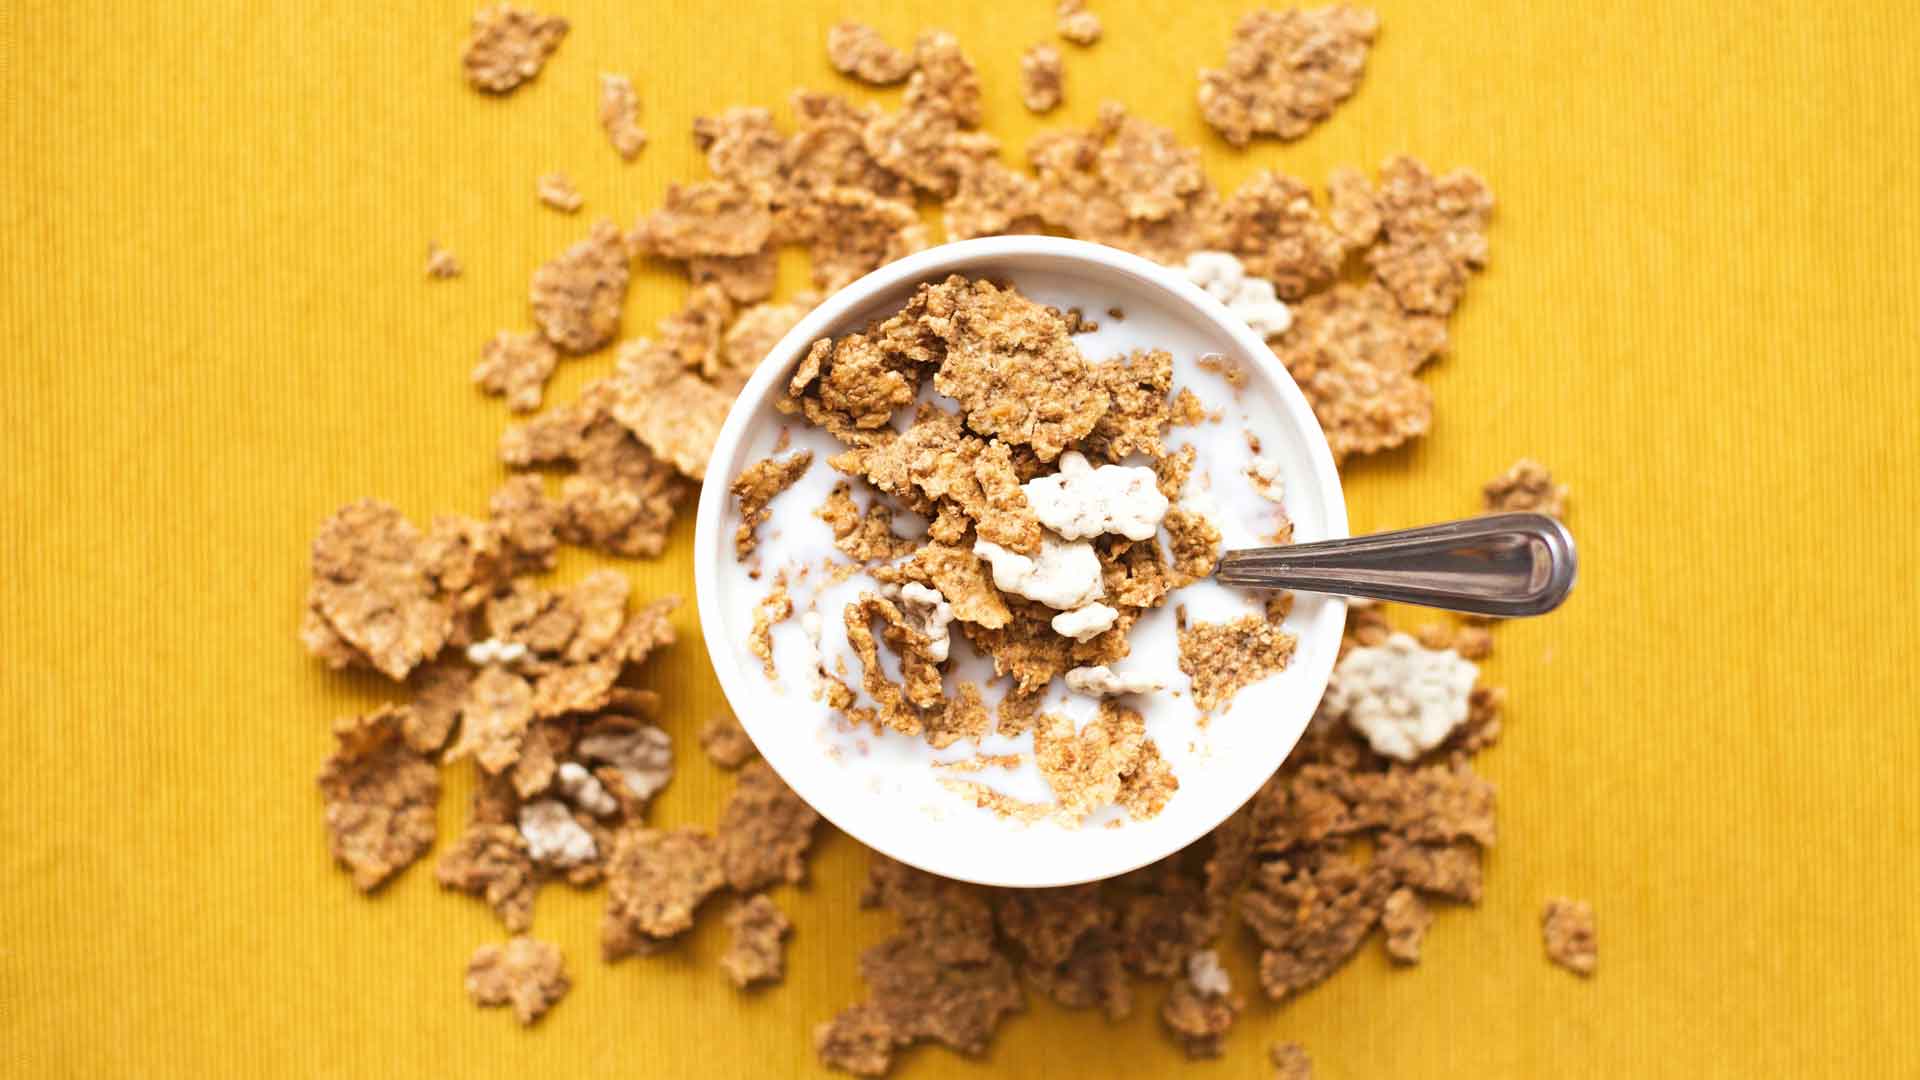 Hallan restos de glifosato en varios cereales para niños